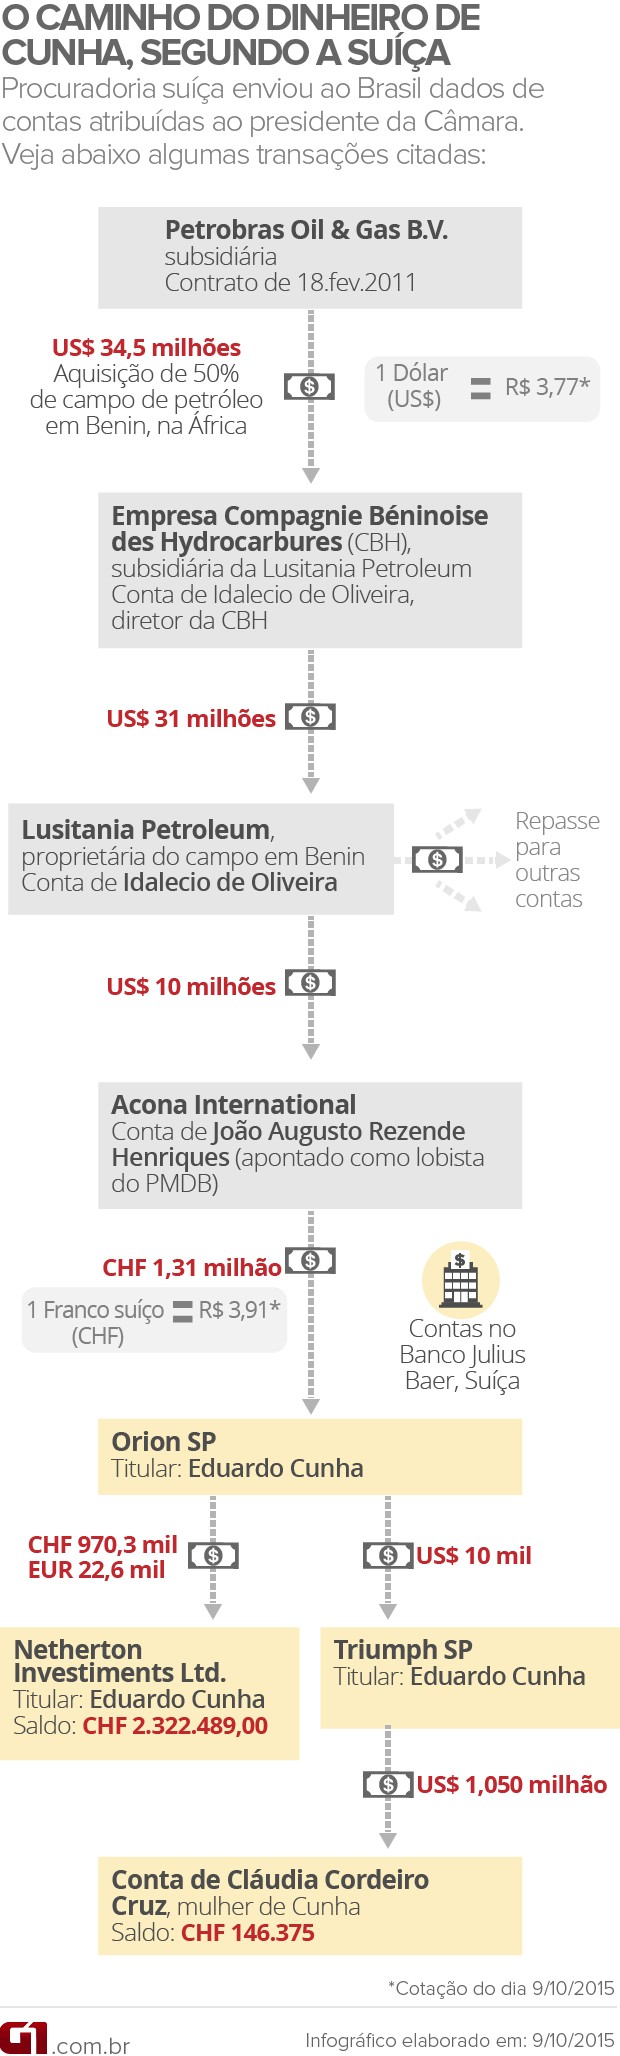 O caminho do dinheiro de Eduardo Cunha, segundo a Suíça (Foto: Editoria de Arte / G1)